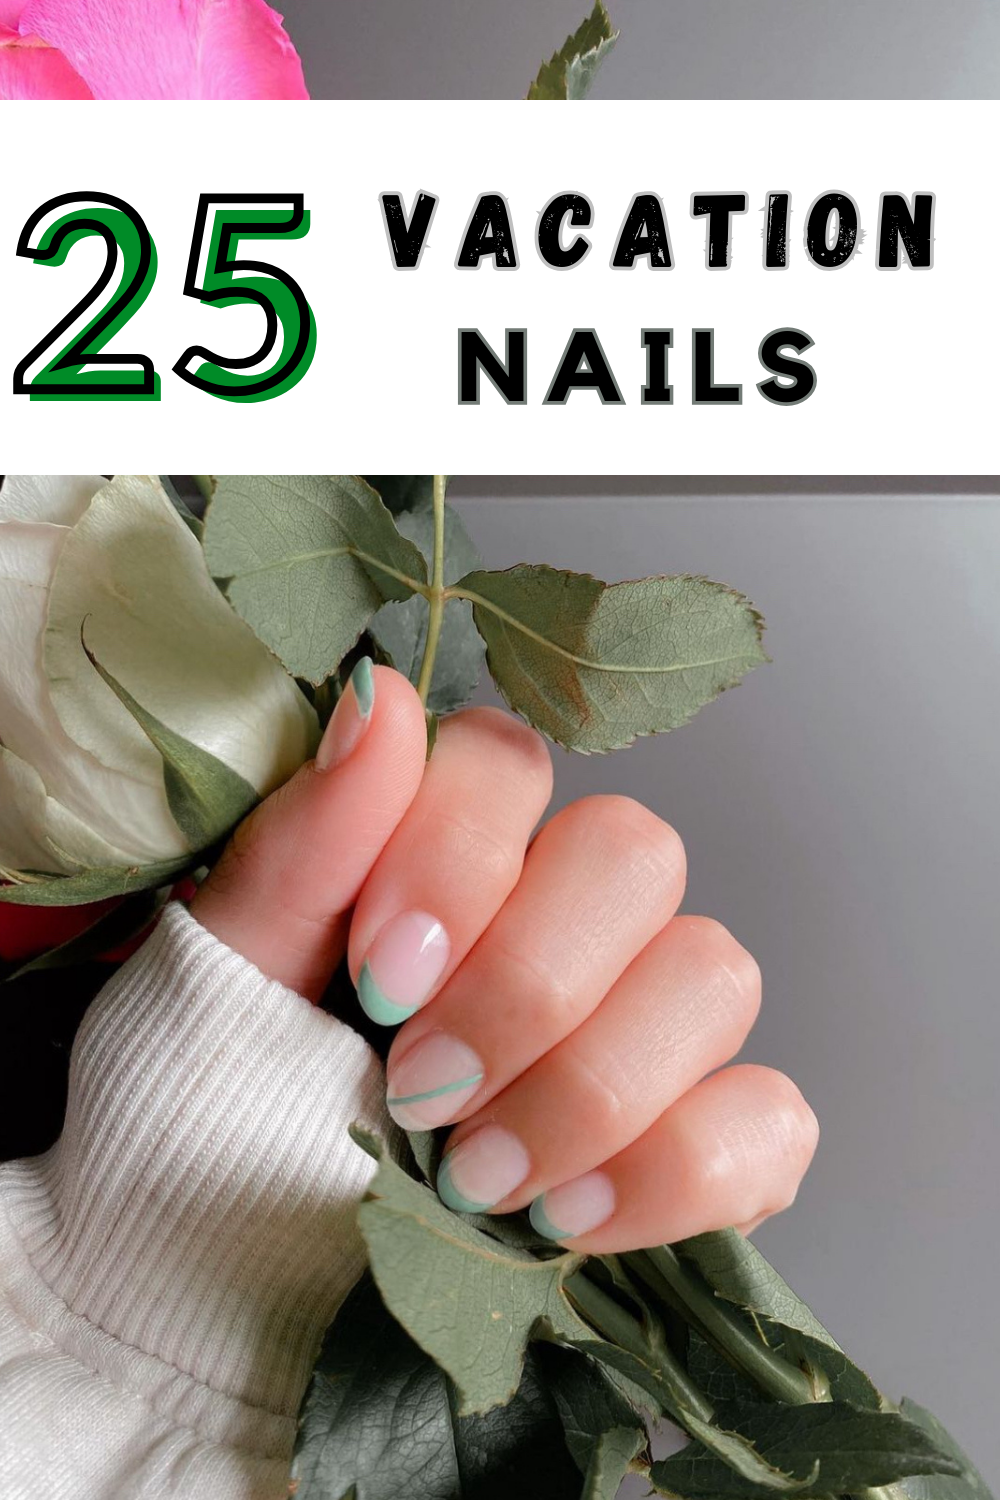 25 Vacation Nails